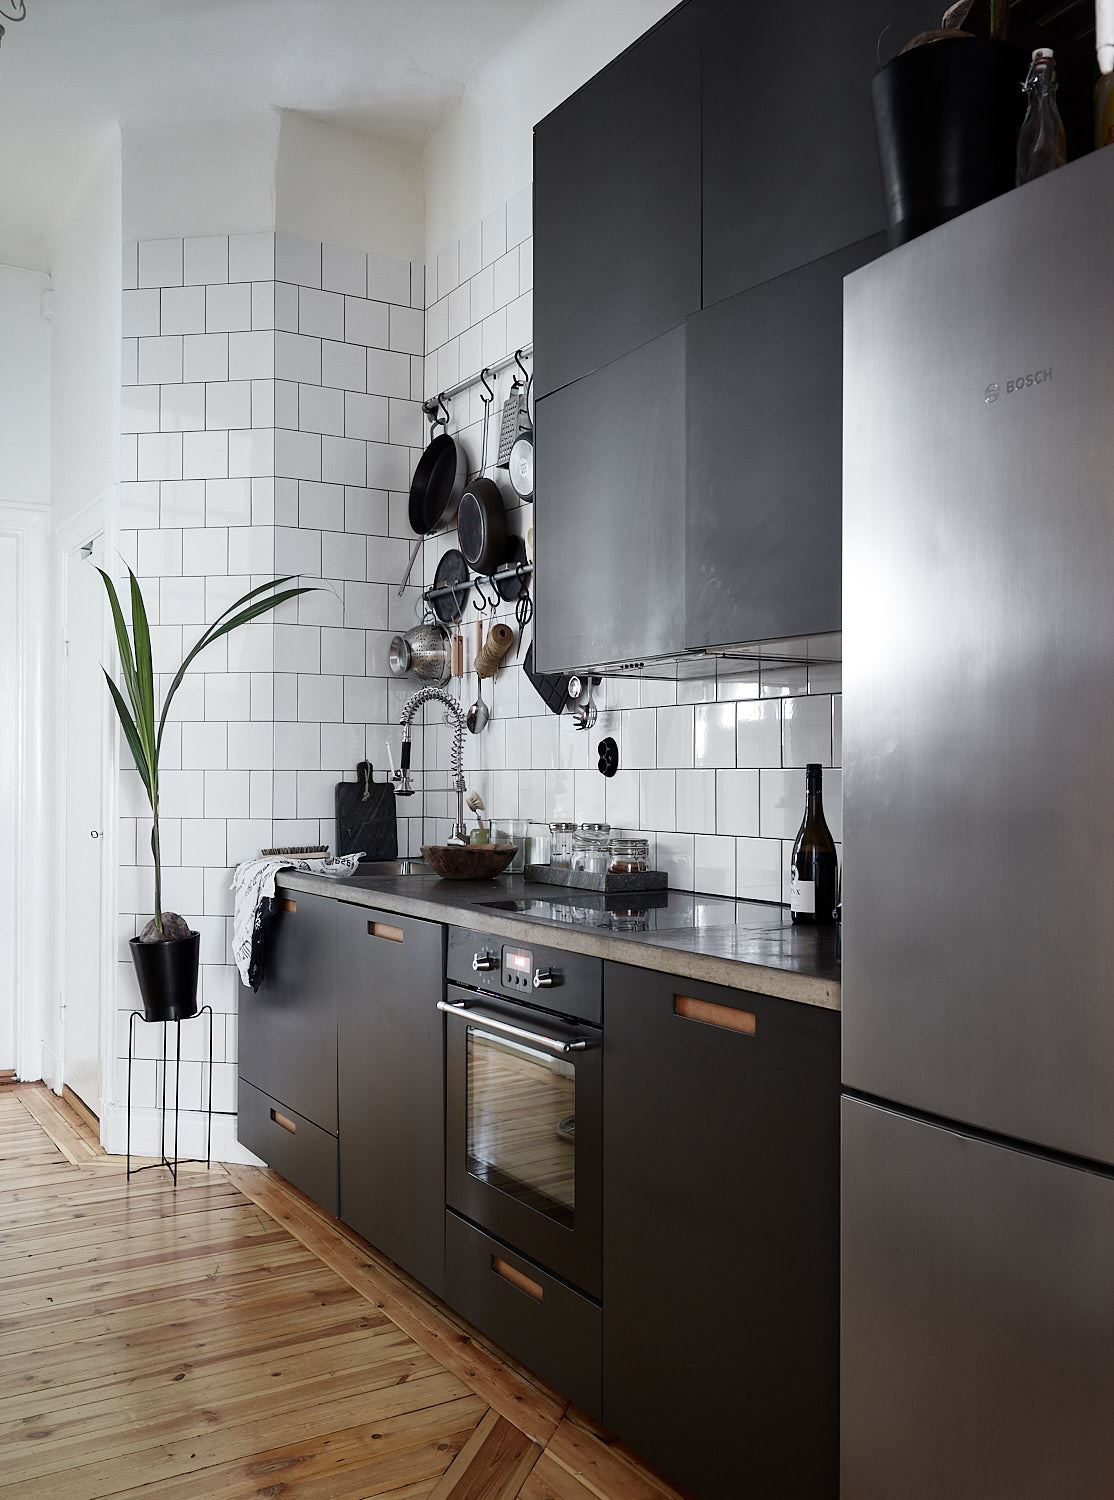 Por qué elegir electrodomésticos integrados en la cocina - Foto 1